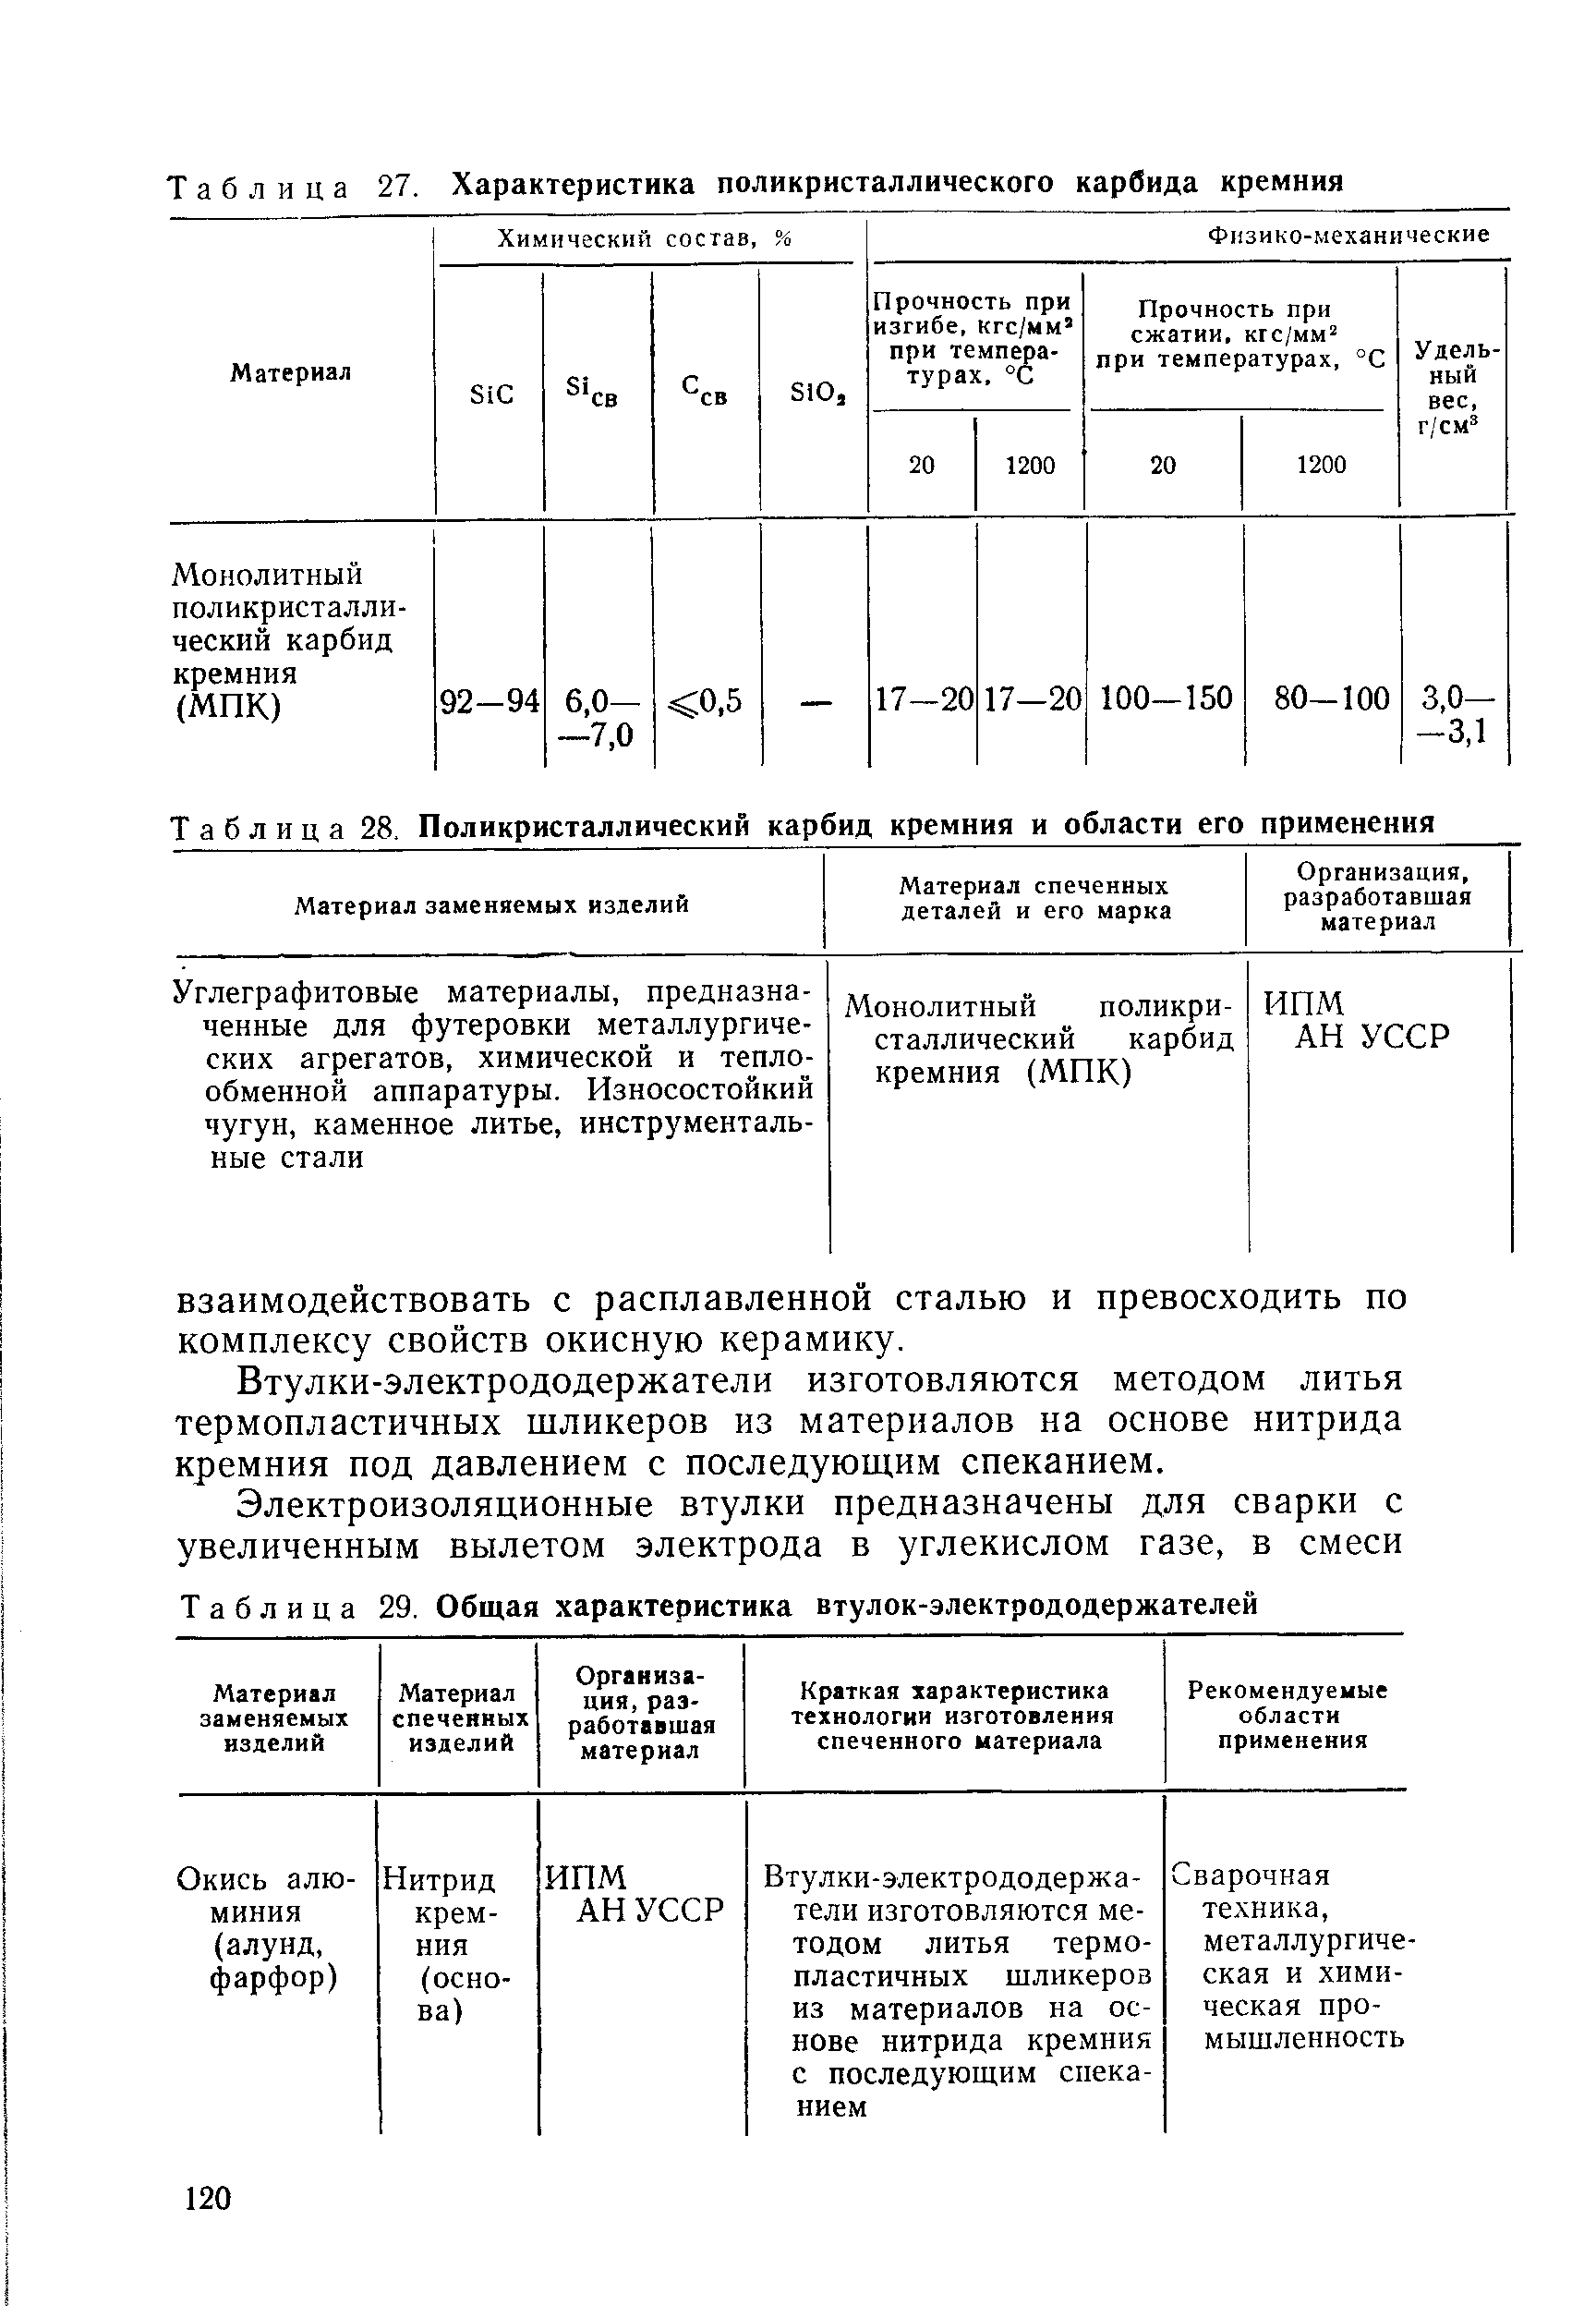 Таблица 28. Поликристаллический карбид кремния и области его применения
